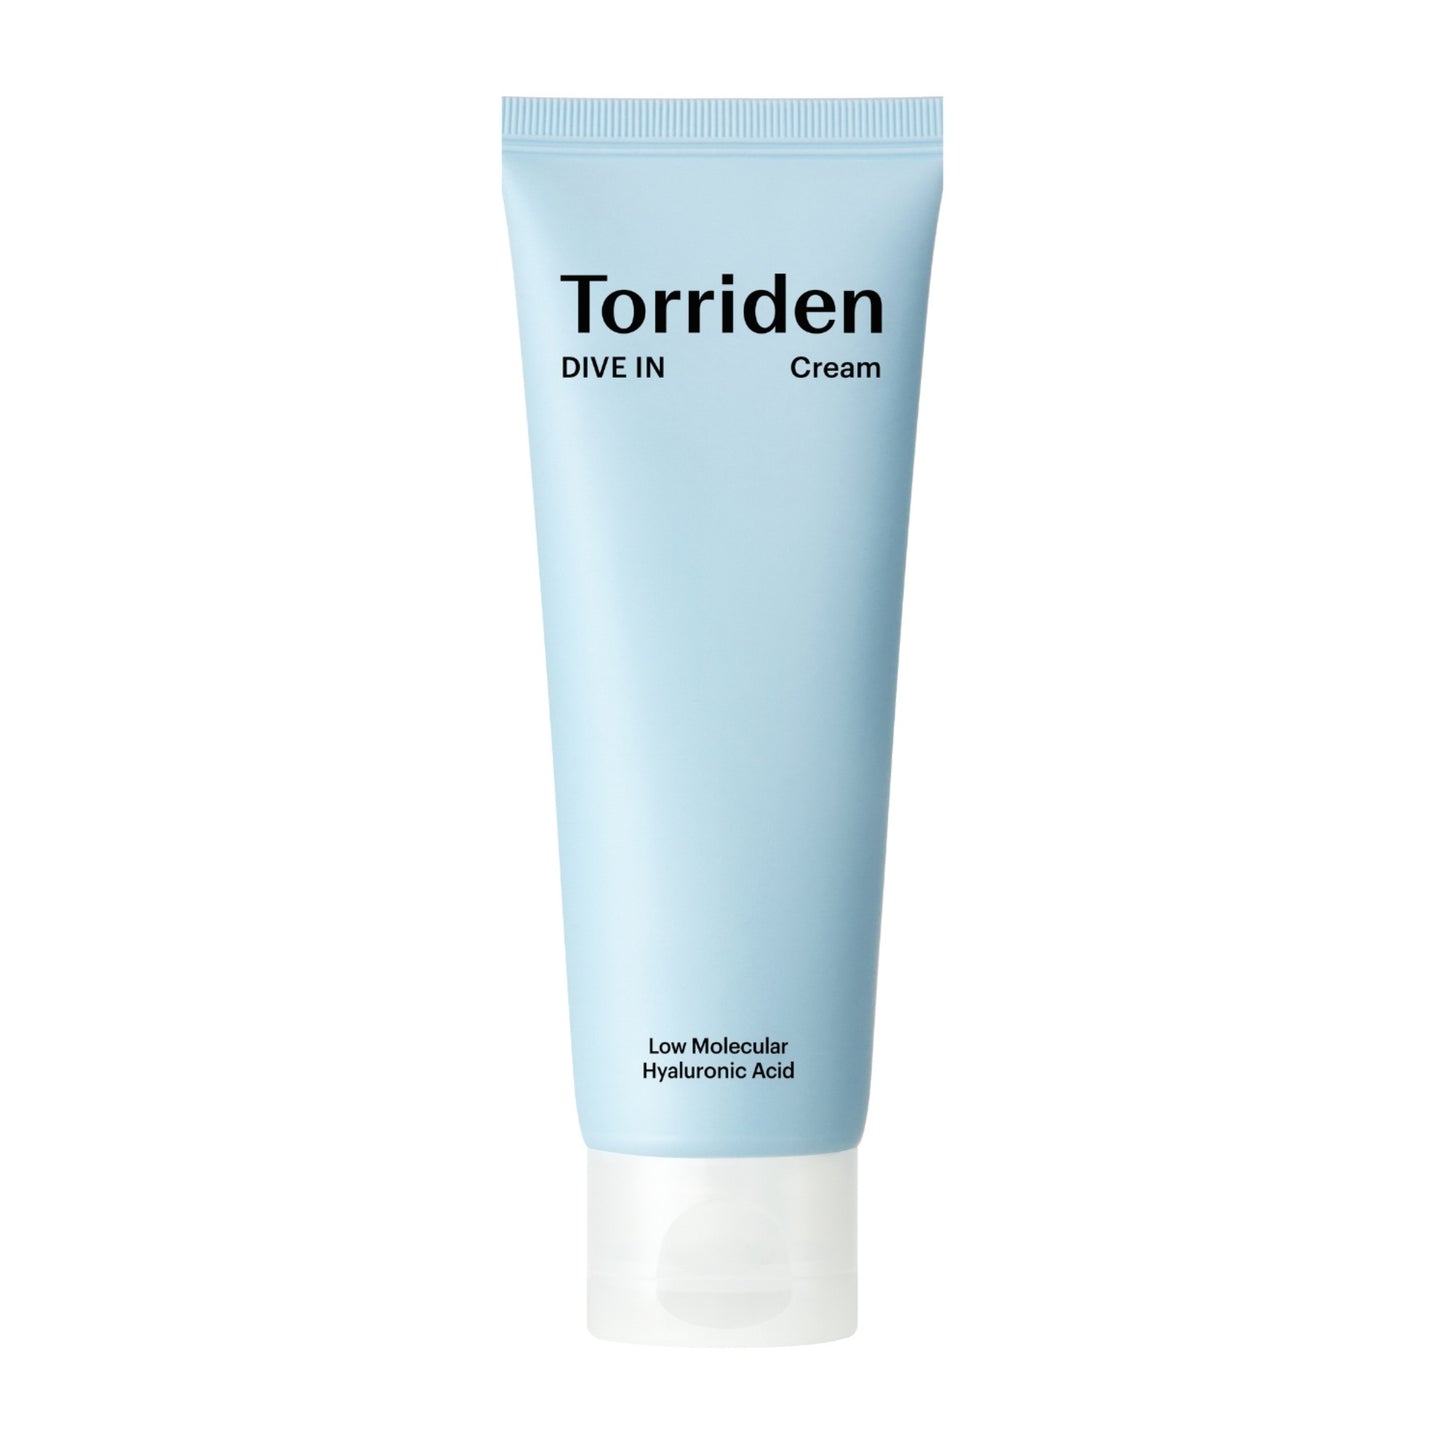 TORRIDEN DIVE-IN Low Molecular Hyaluronic Acid Cream